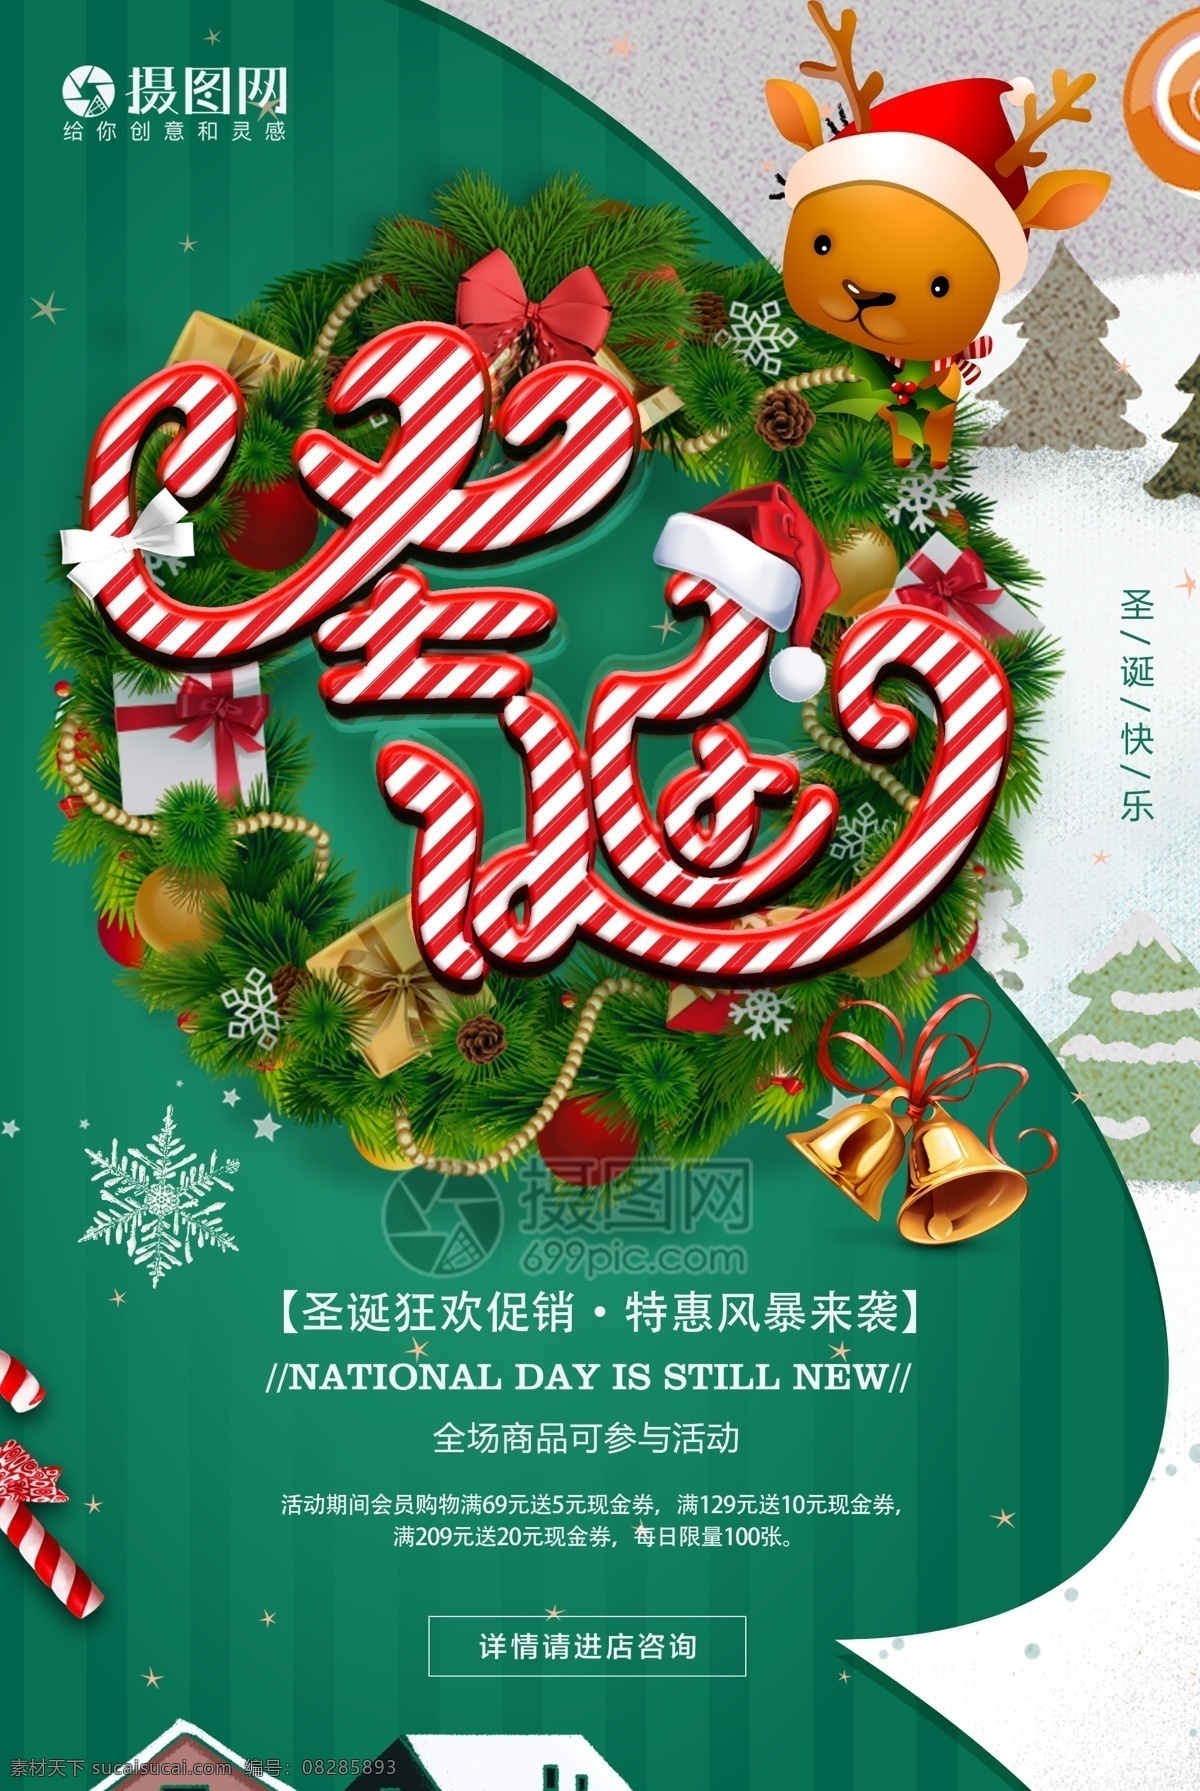 糖果 字 圣诞节 快乐 节日 海报 绿色 圣诞节快乐 植物 铃铛 可爱 圣诞 小 麋鹿 糖果字